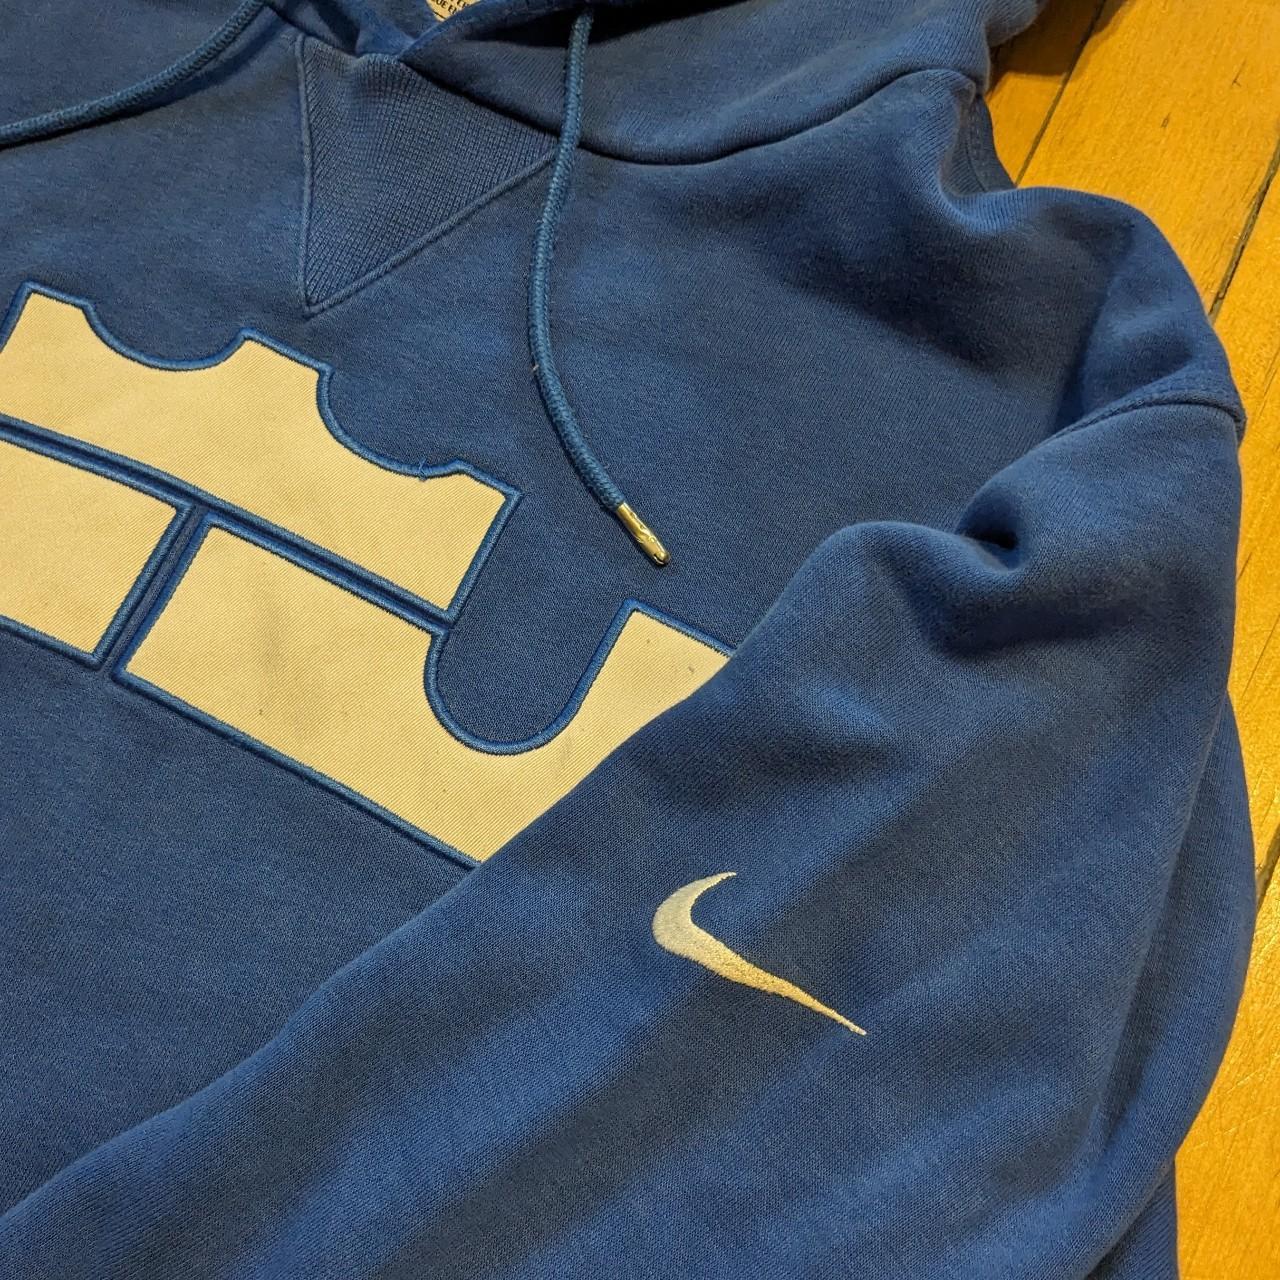 Vintage Nike Lebron James Hooded Sweatshirt - Depop